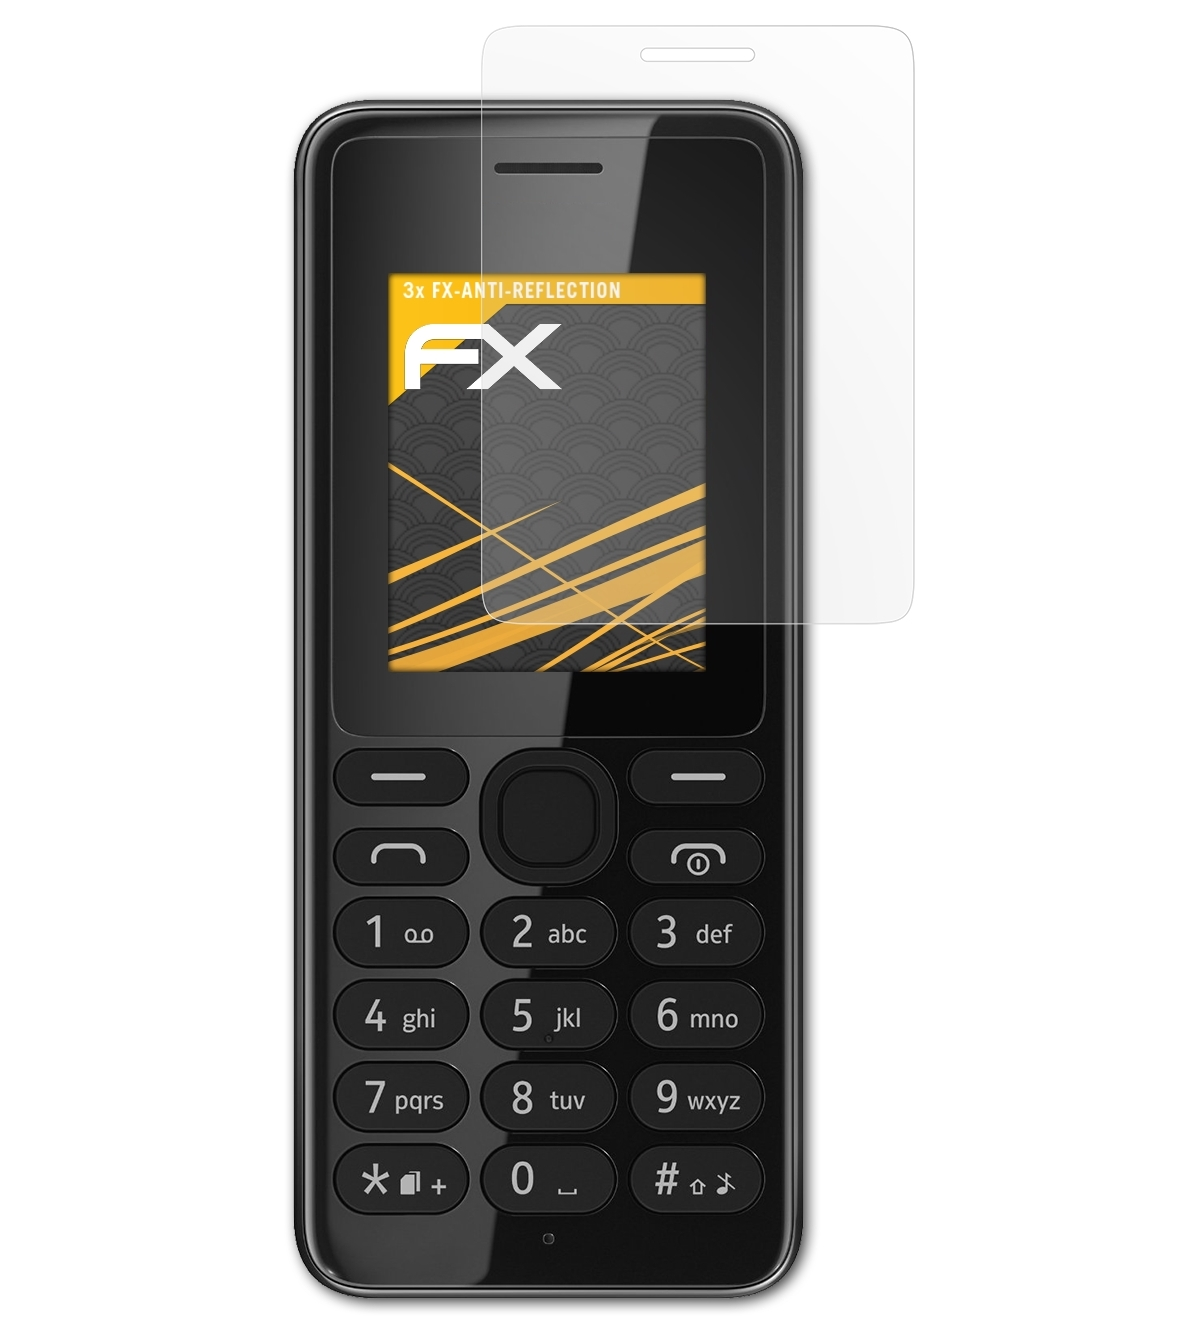 Nokia 3x FX-Antireflex Displayschutz(für 108) ATFOLIX